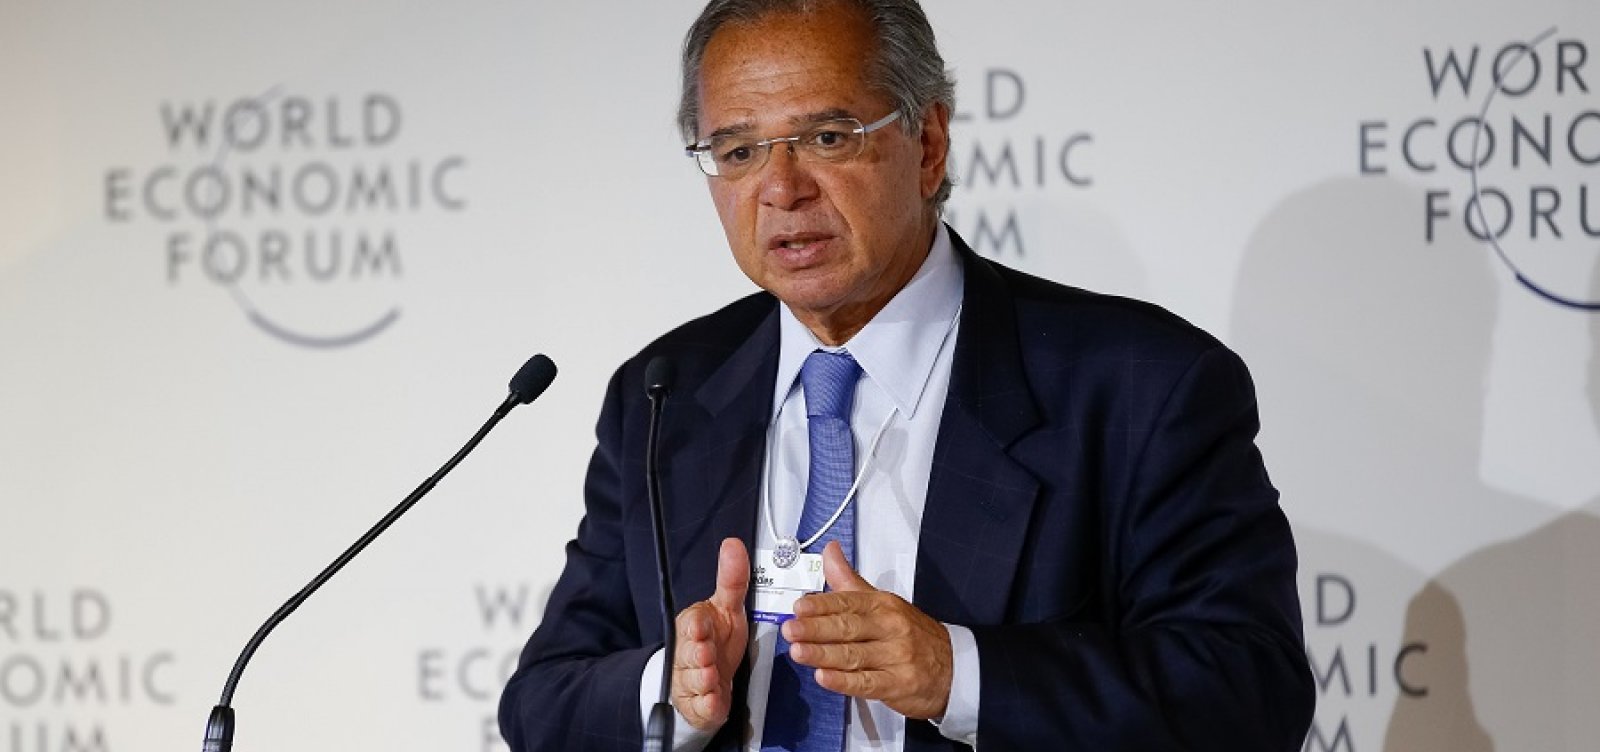 Em Davos, Guedes participará de painéis sobre América Latina, dominância do dólar e indústria